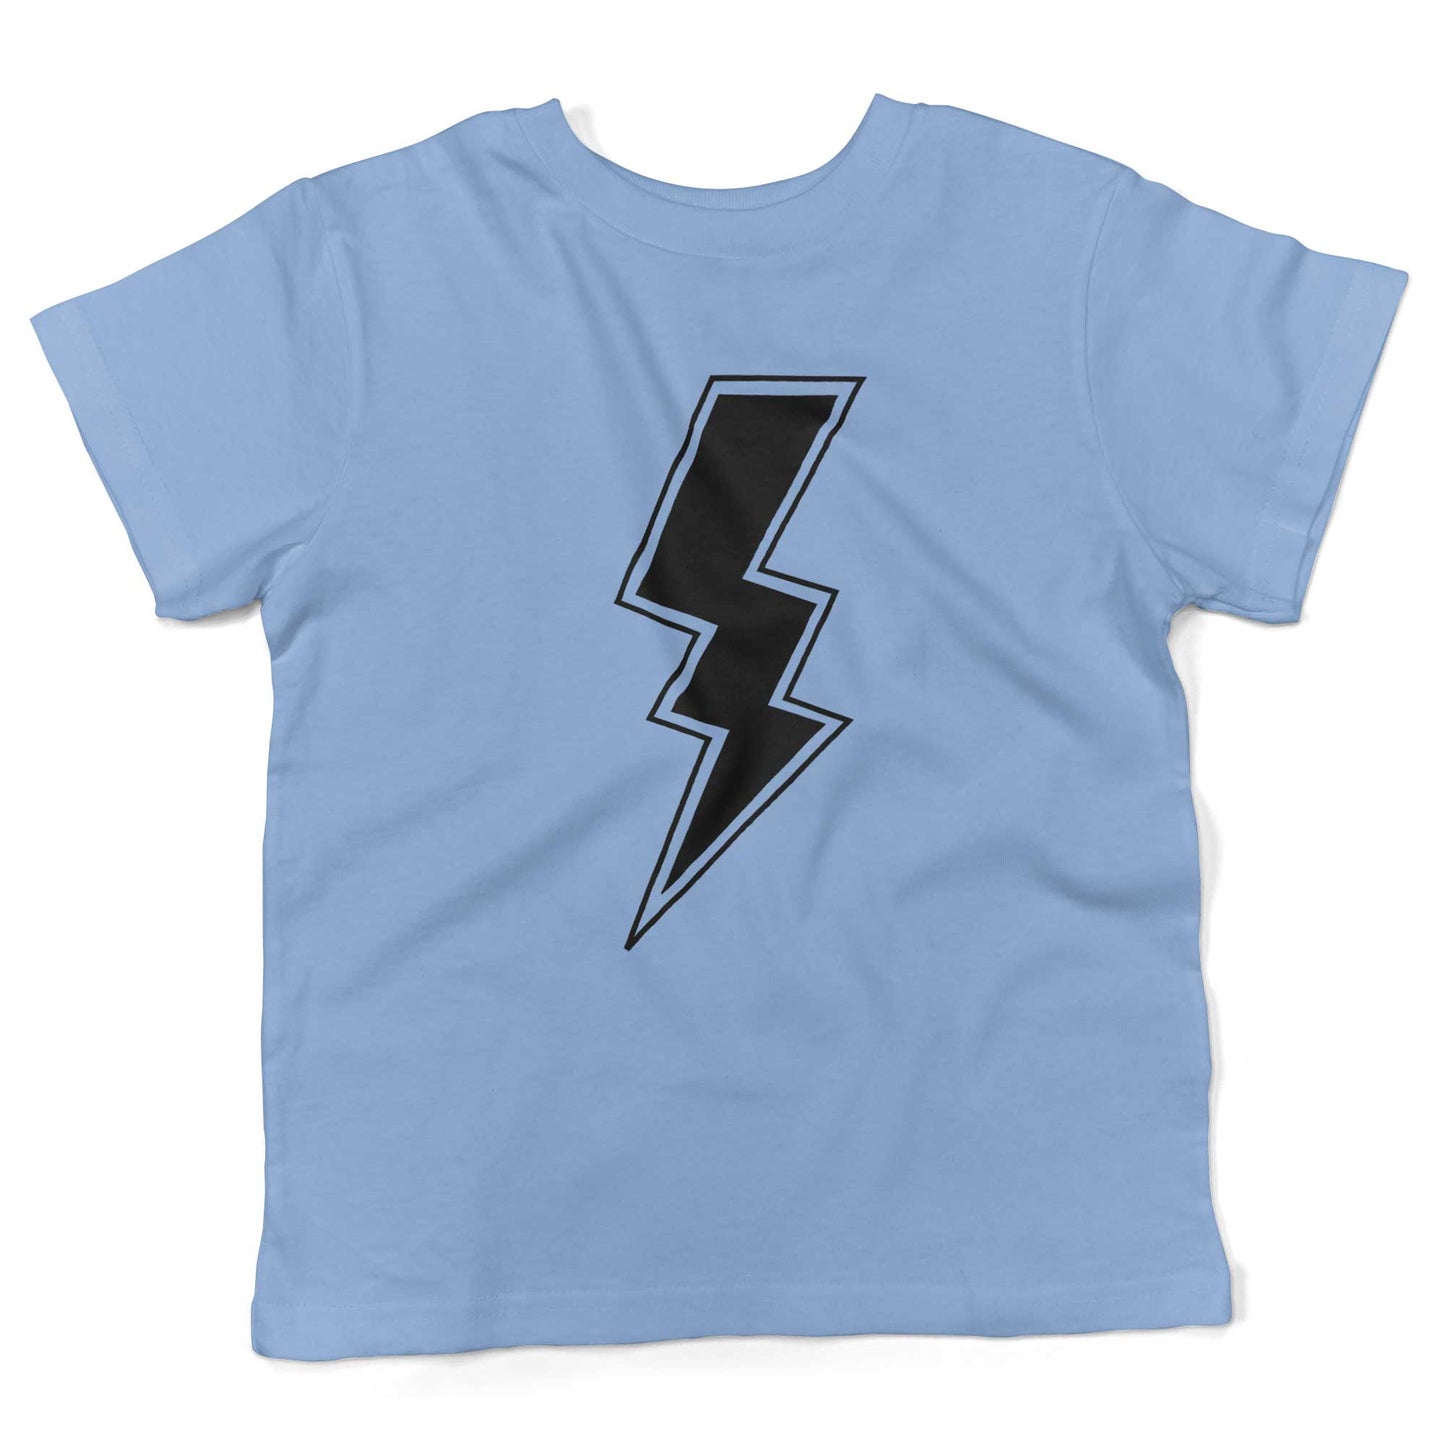 Giant Lightning Bolt Toddler Shirt-Organic Baby Blue-2T